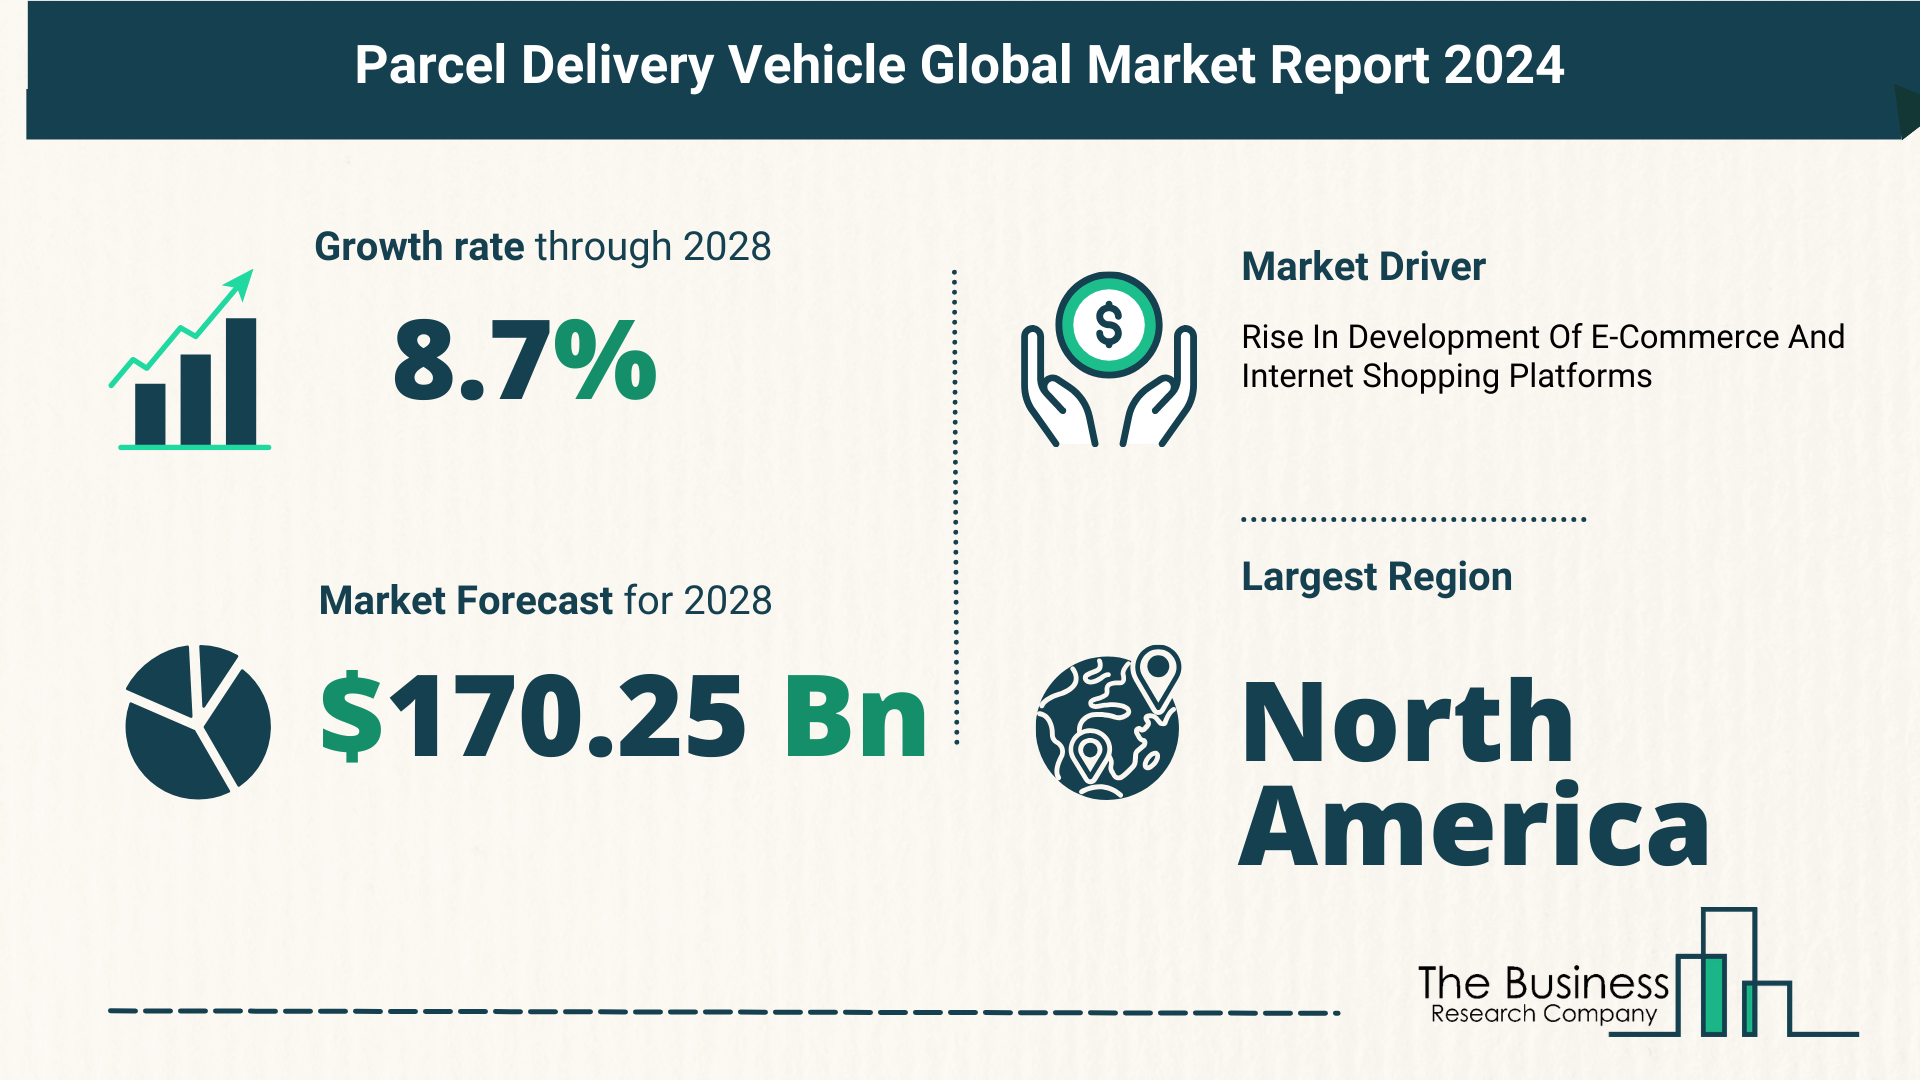 Global Parcel Delivery Vehicle Market